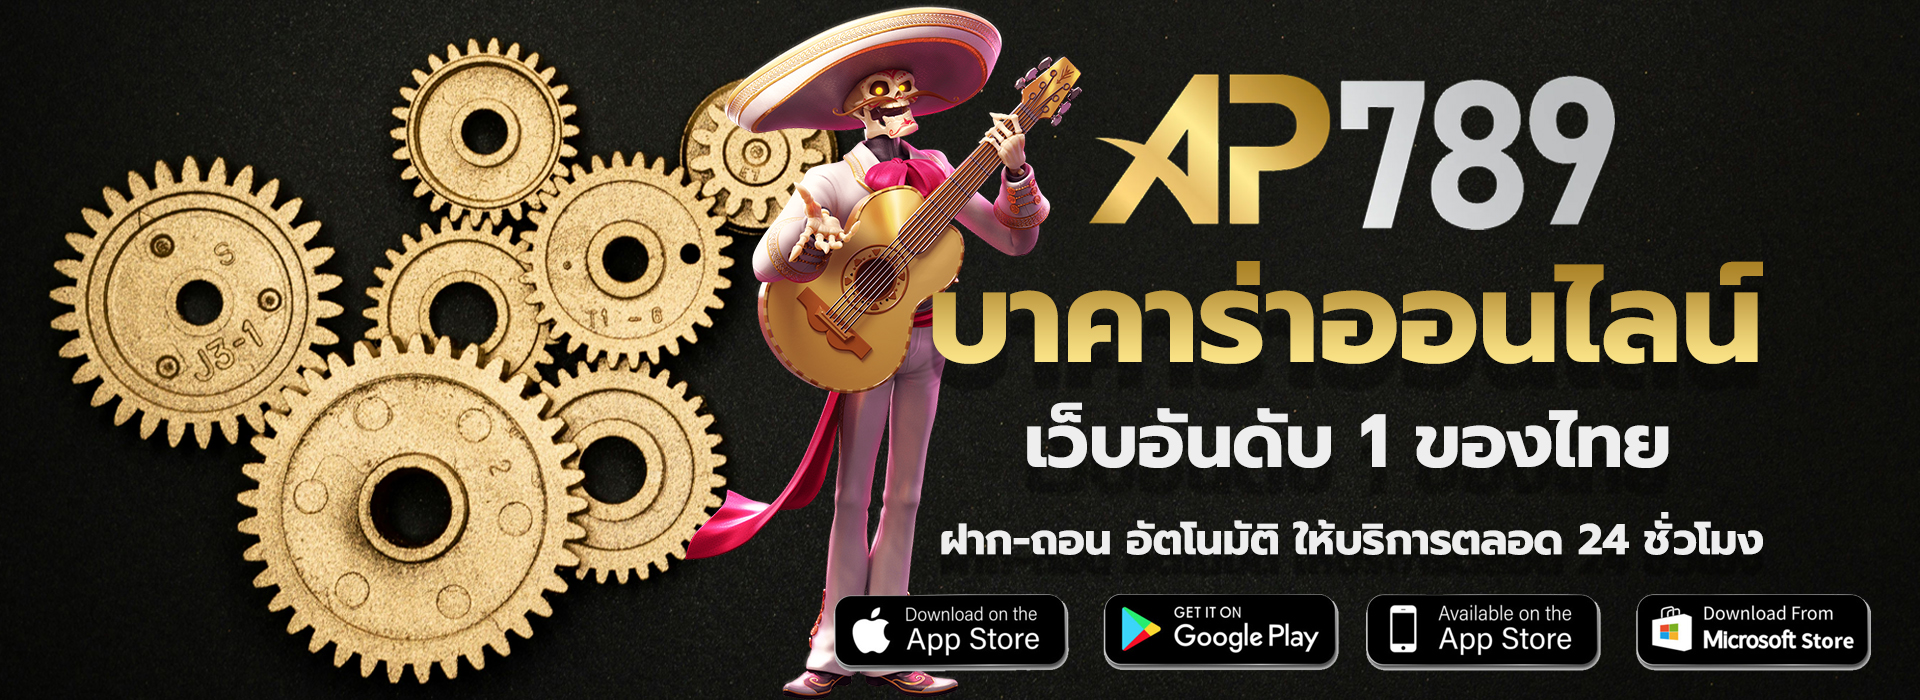 AP789 บาคาร่าออนไลน์ เว็บอันดับ 1 ของไทย